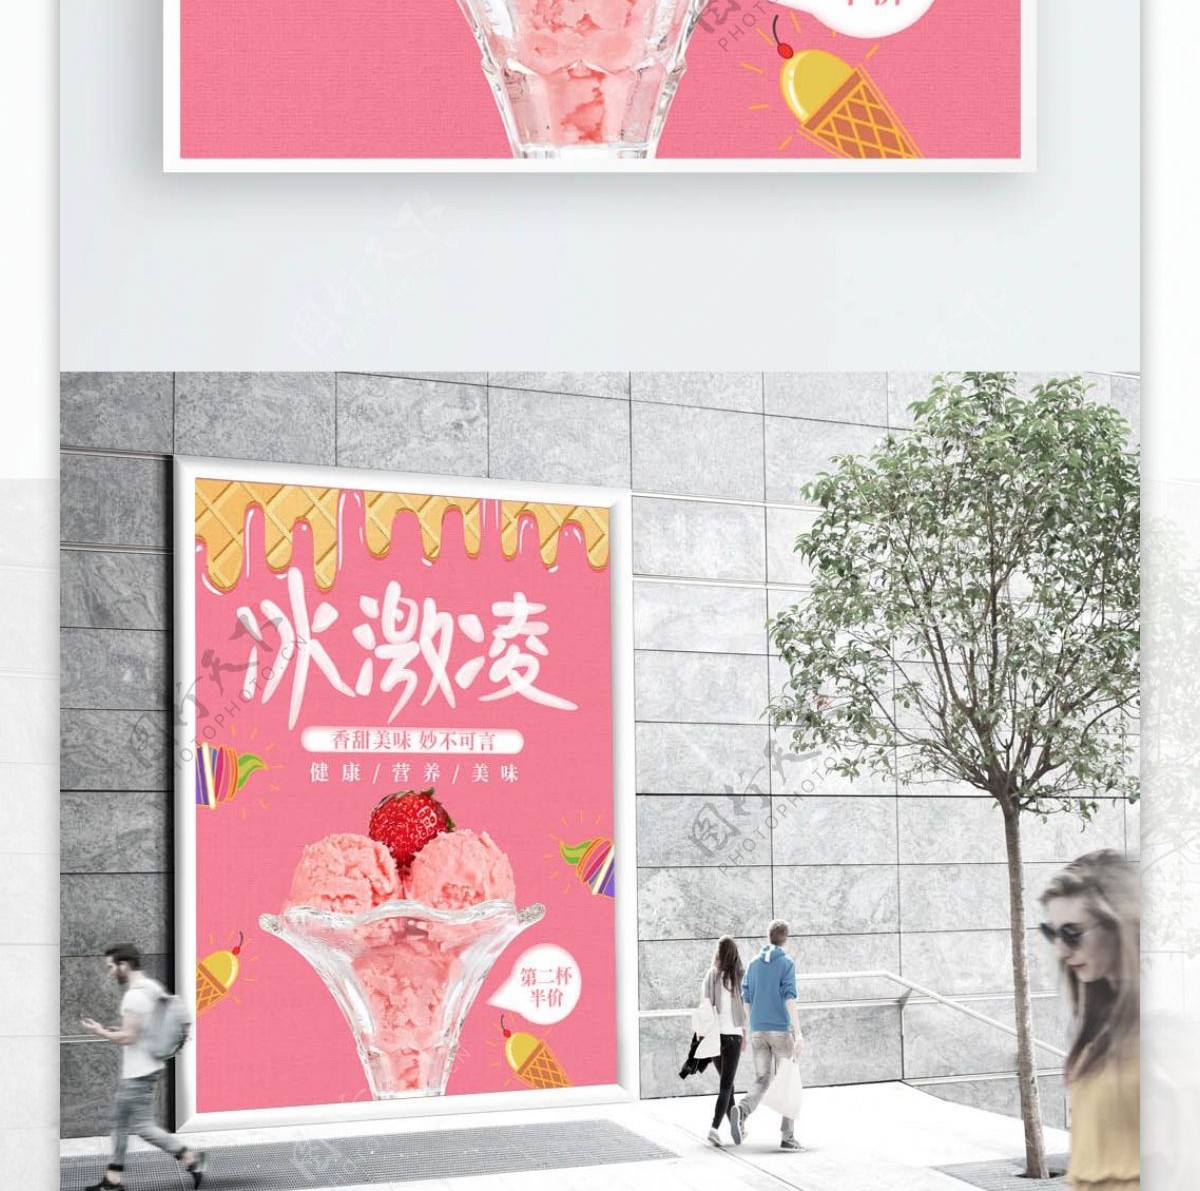 粉色小清新冰激凌美食促销海报